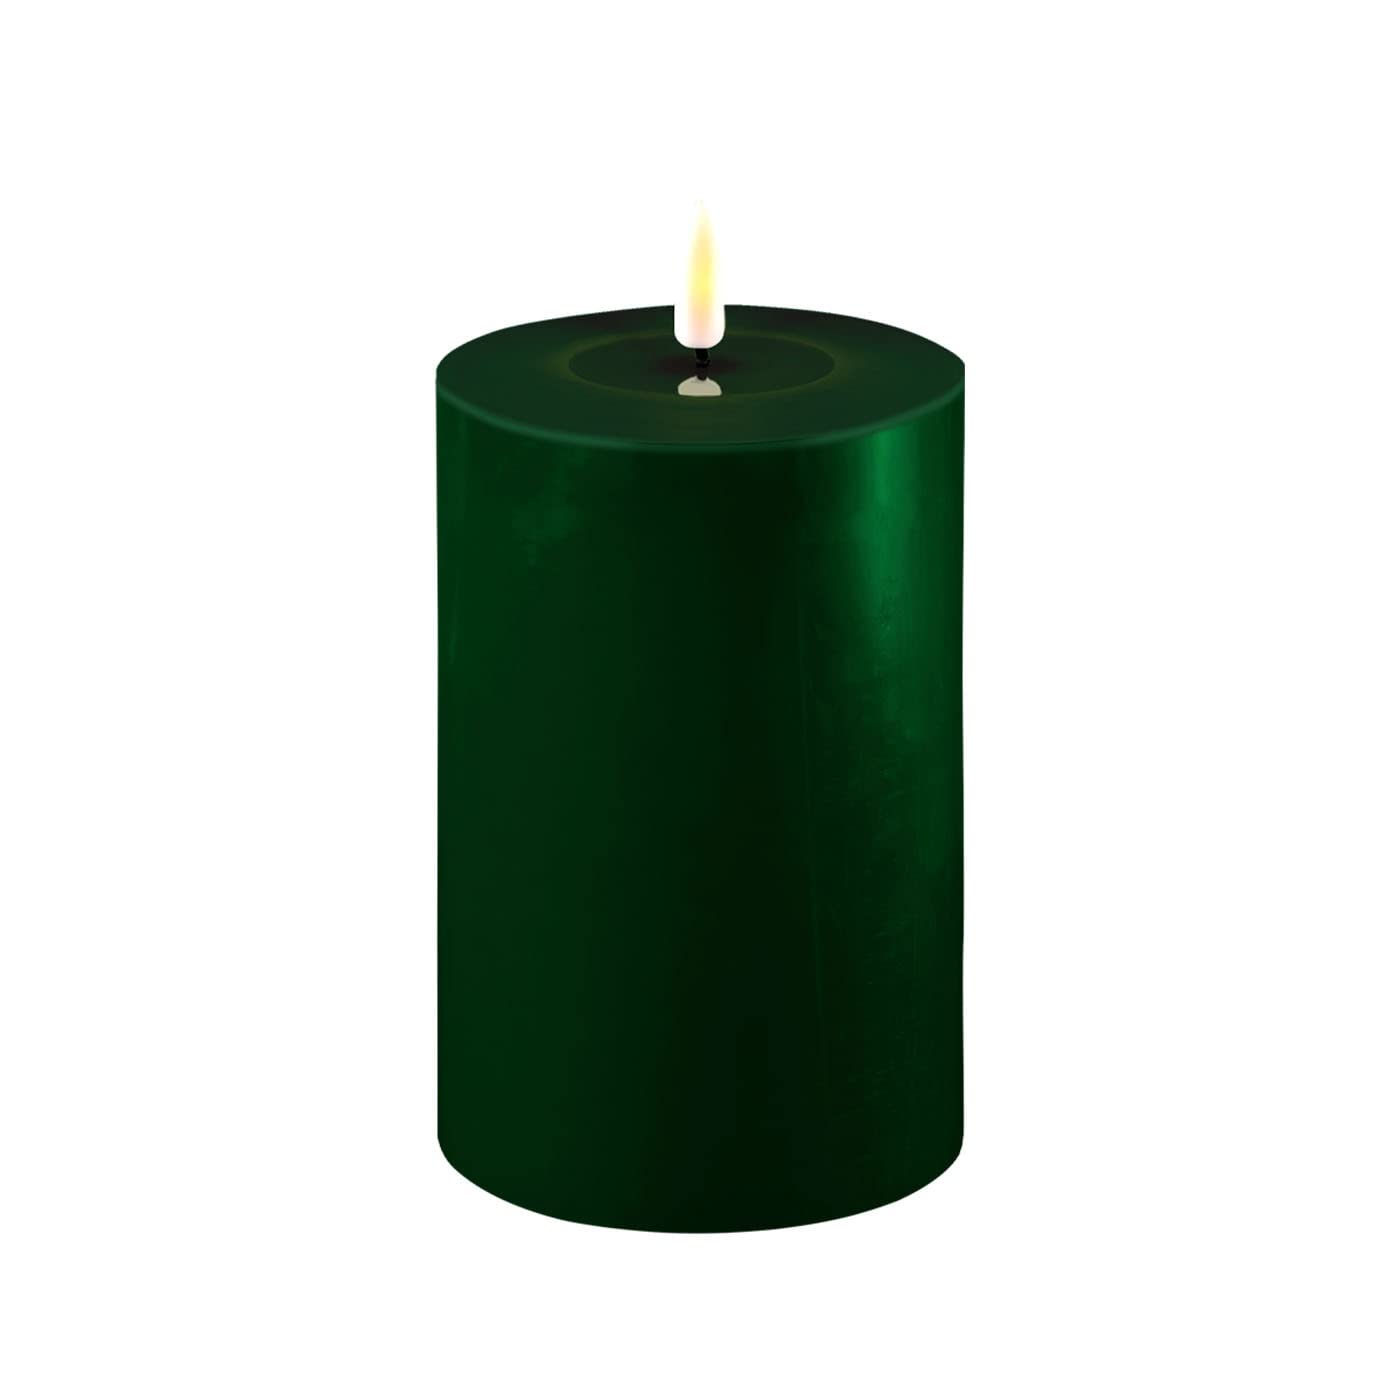 ReWu LED Kerze Deluxe Homeart, Indoor LED-Kerze mit realistischer Flamme auf einem Echtwachsspiegel, warmweißes Licht -Dunkel Grün 10 x 15 cm